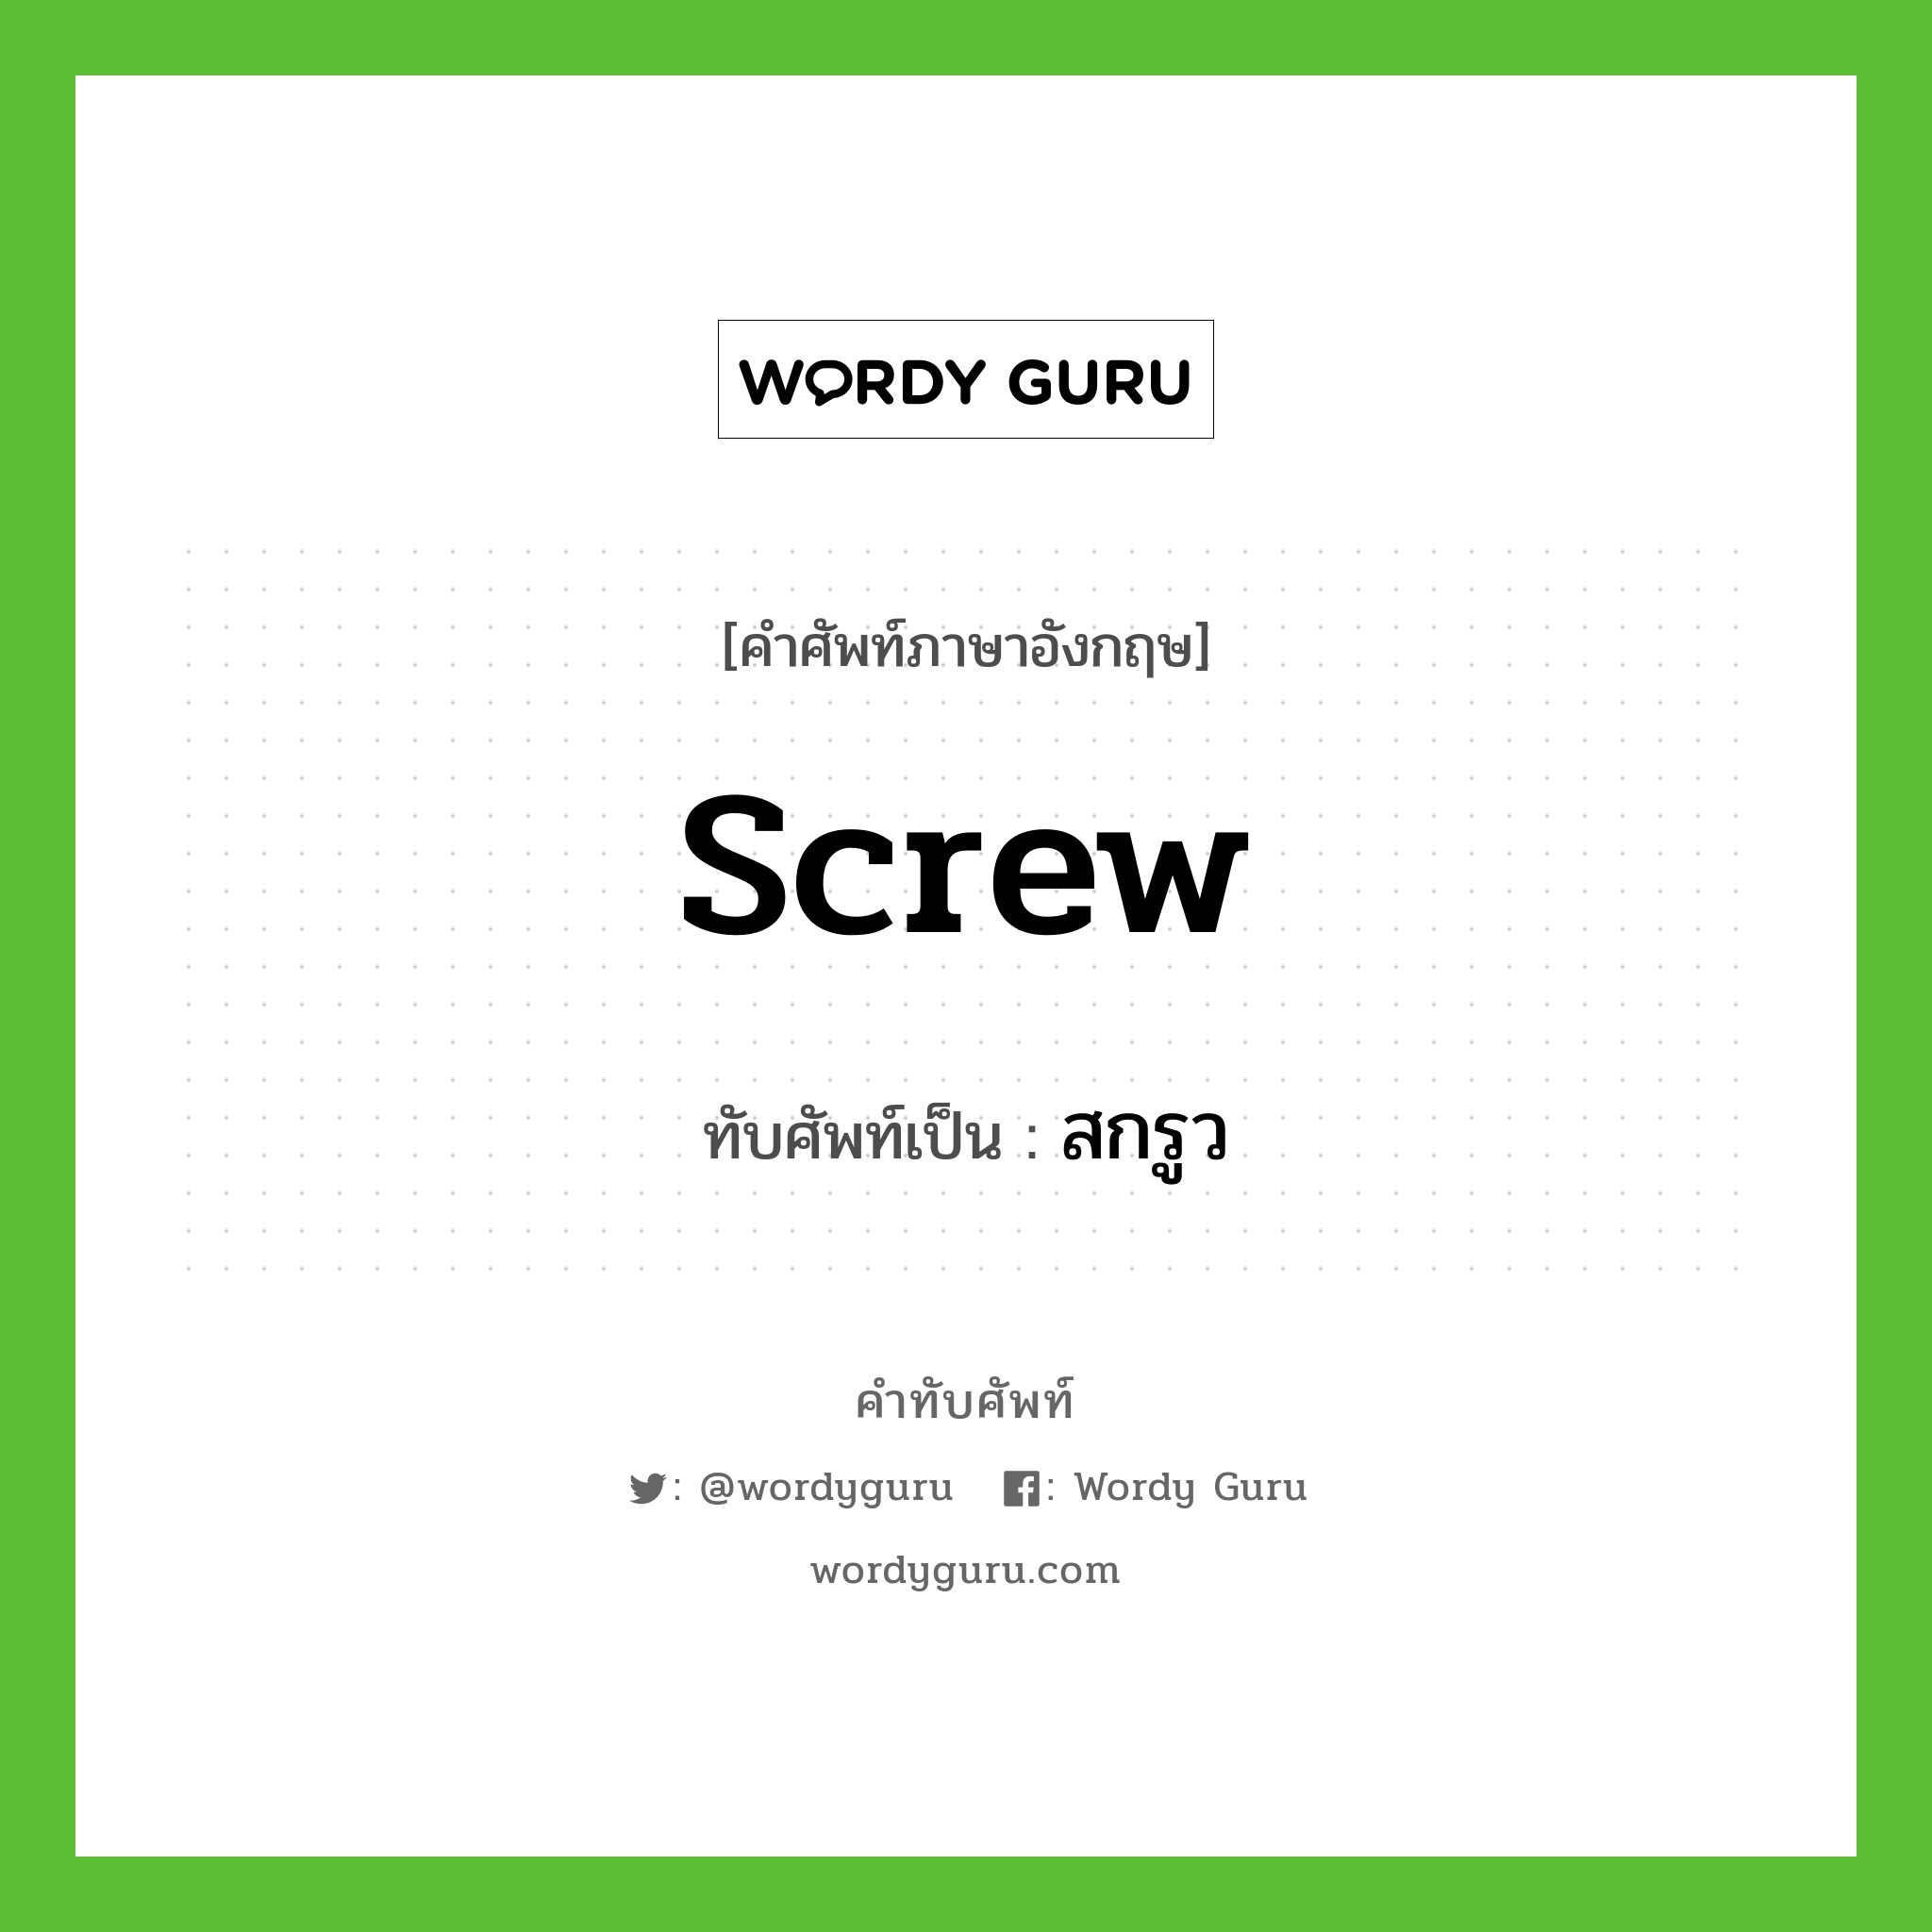 screw เขียนเป็นคำไทยว่าอะไร?, คำศัพท์ภาษาอังกฤษ screw ทับศัพท์เป็น สกรูว